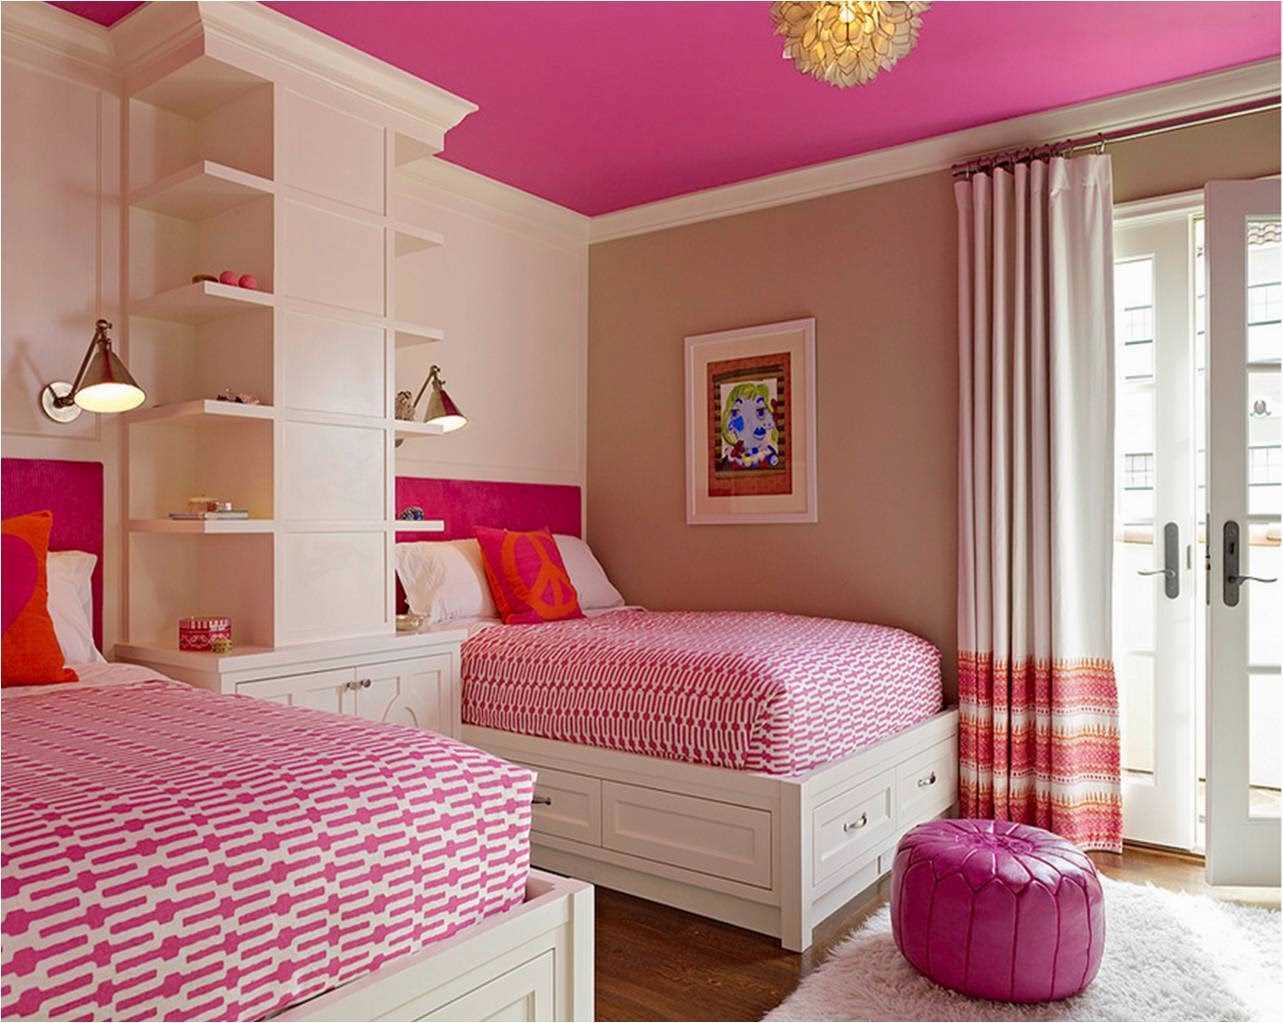 idea menggunakan merah jambu di hiasan bilik yang terang